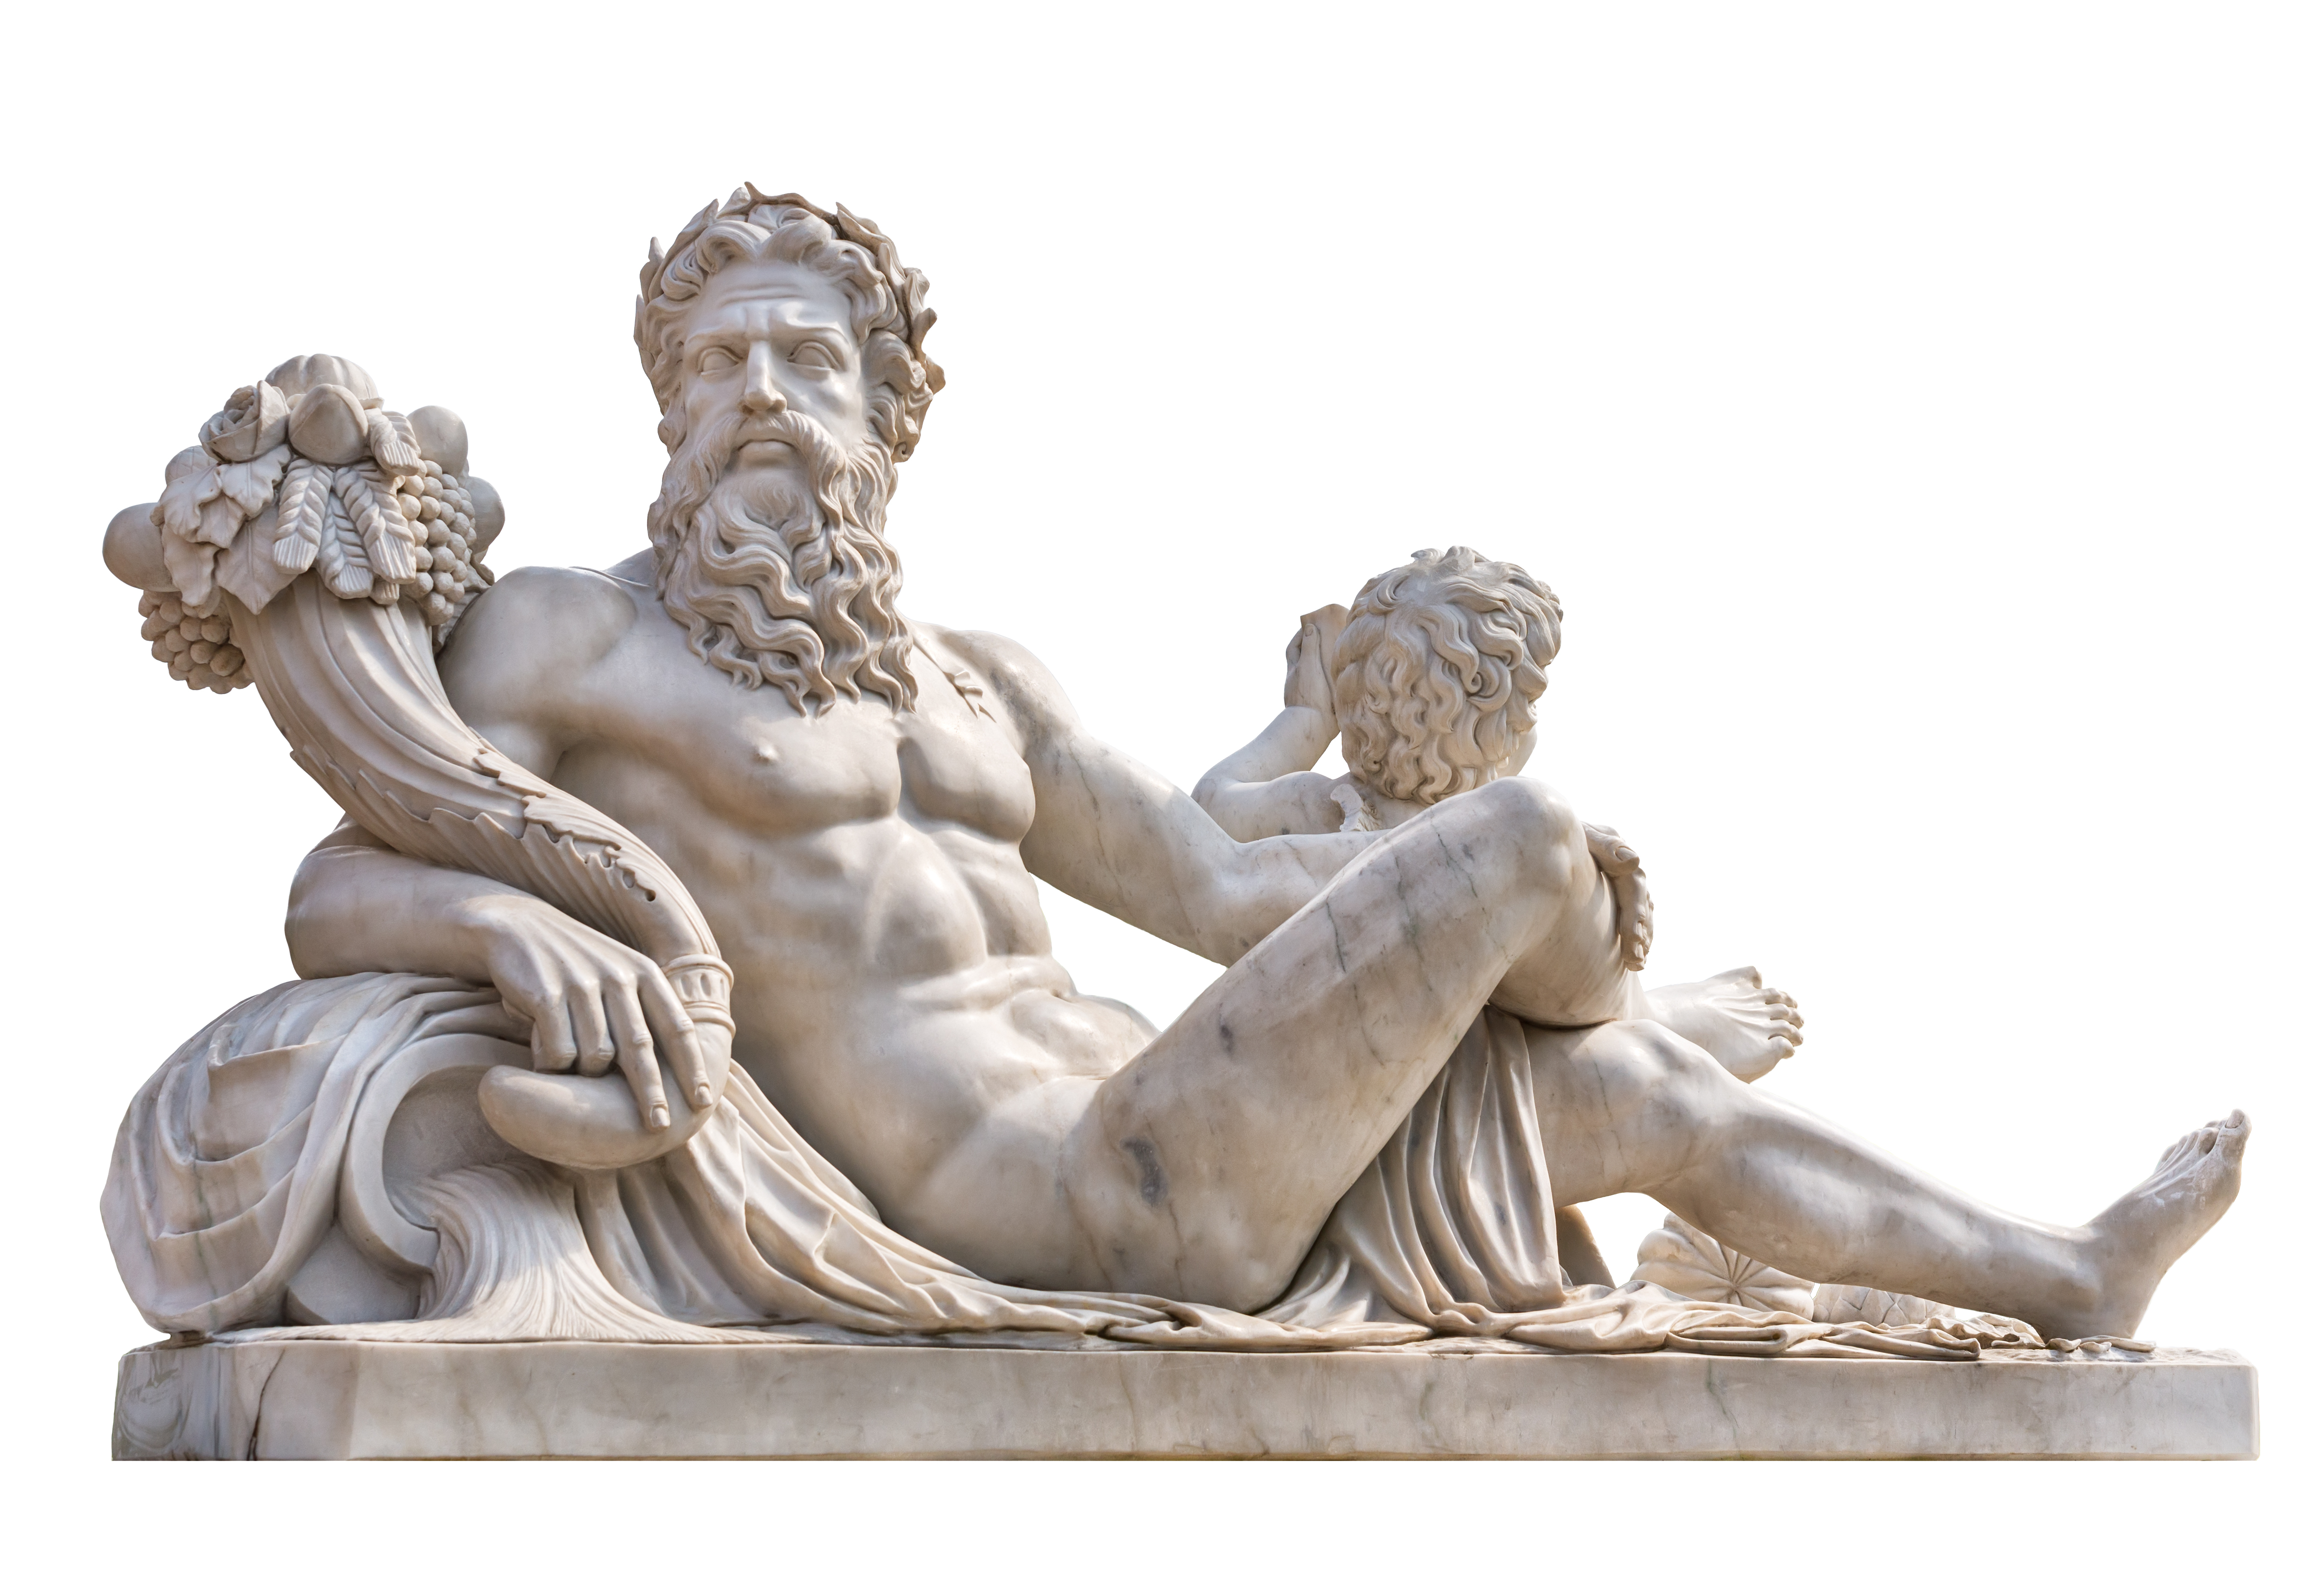 Statue of Hera's husband, Zeus